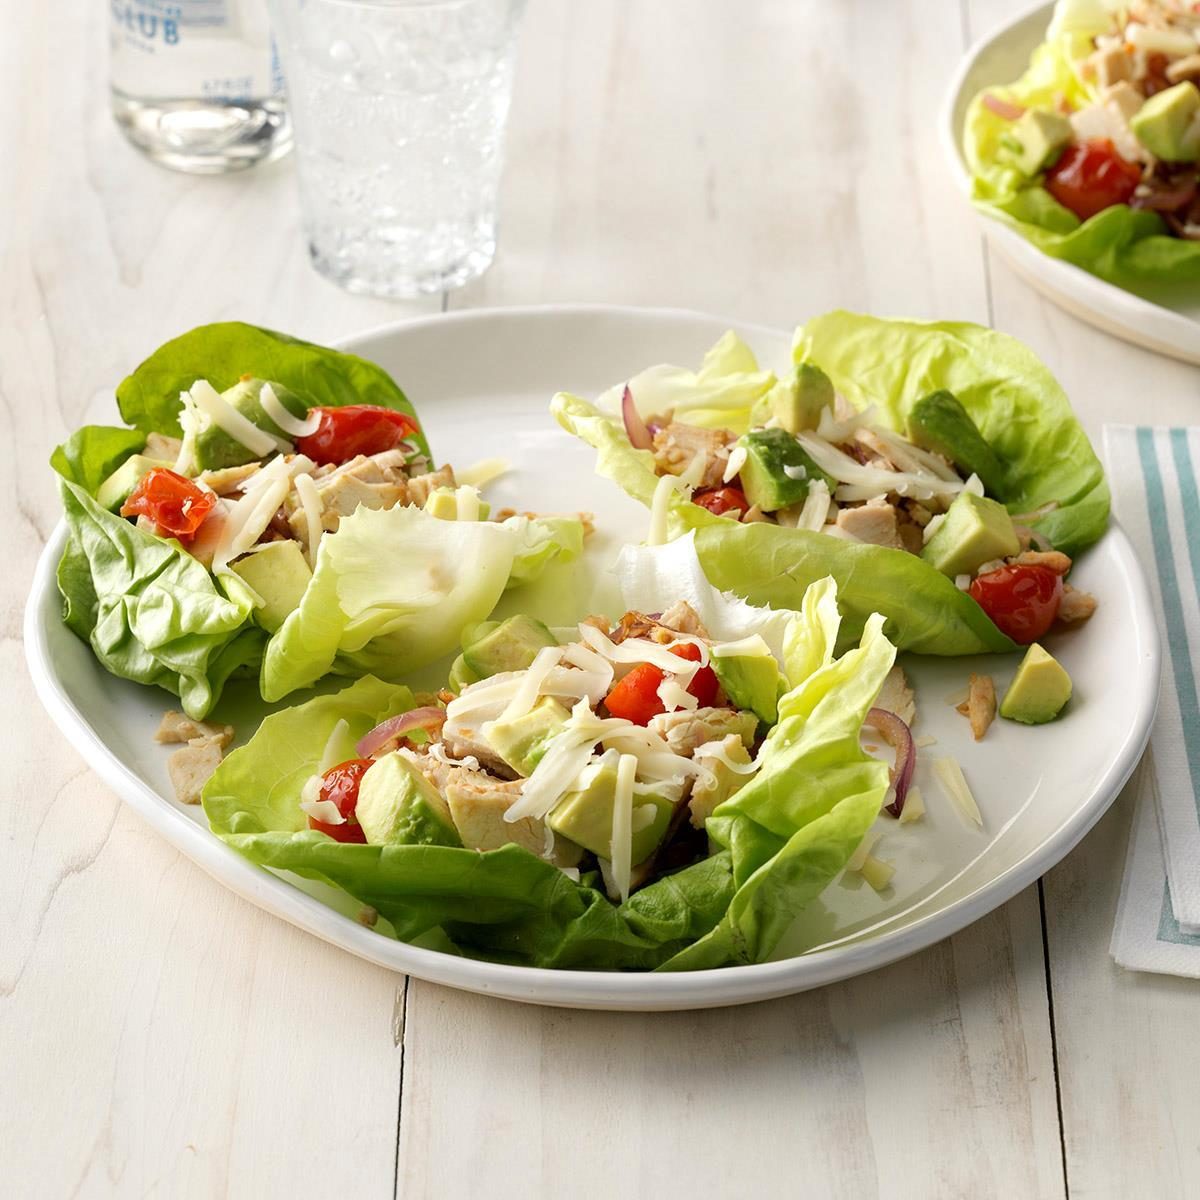 deli-turkey-lettuce-wraps-recipe-how-to-make-it